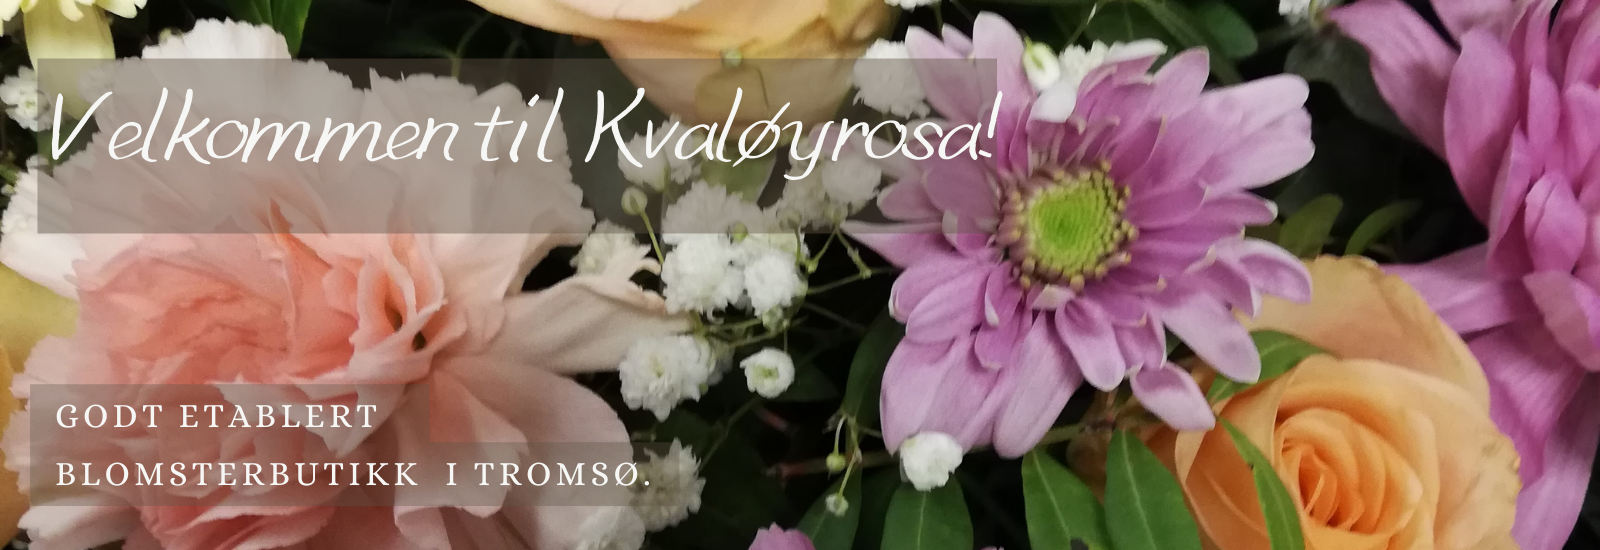 Blomsterbutikk i Tromsø som leverer blomster til alle anledninger